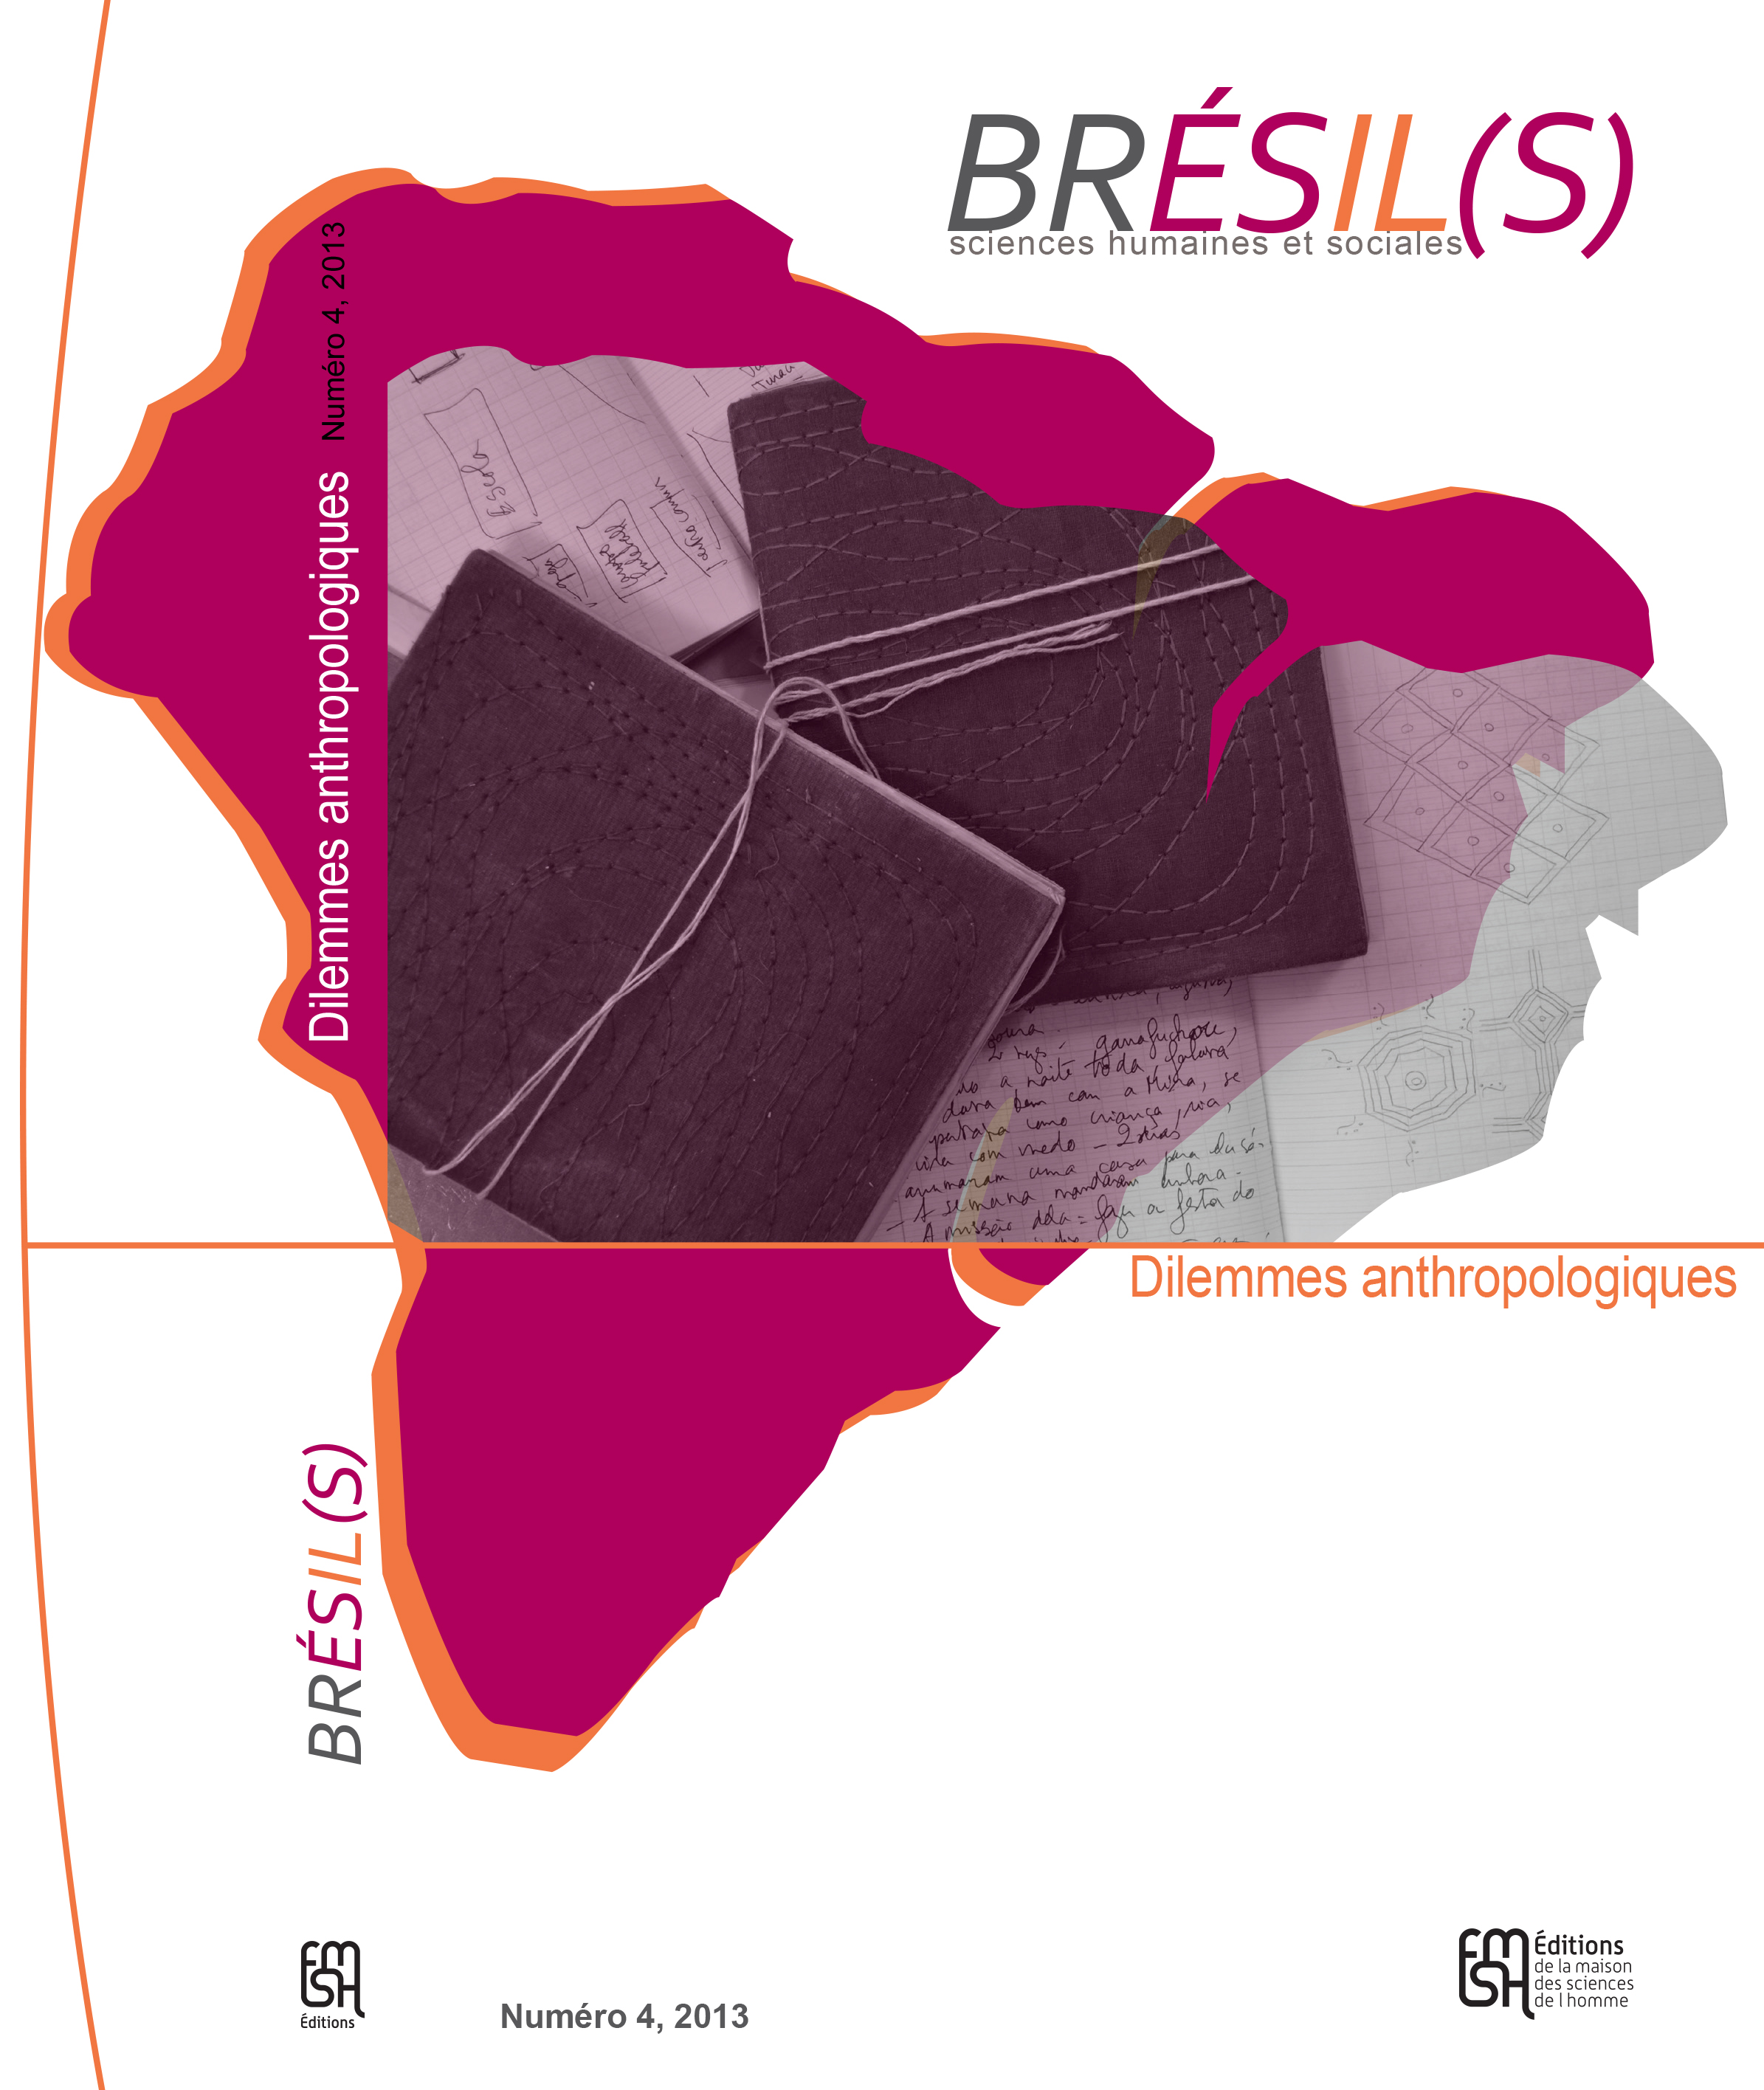 <strong>Dilemmes anthropologiques</strong>, le nouveau numéro de Brésil(s)